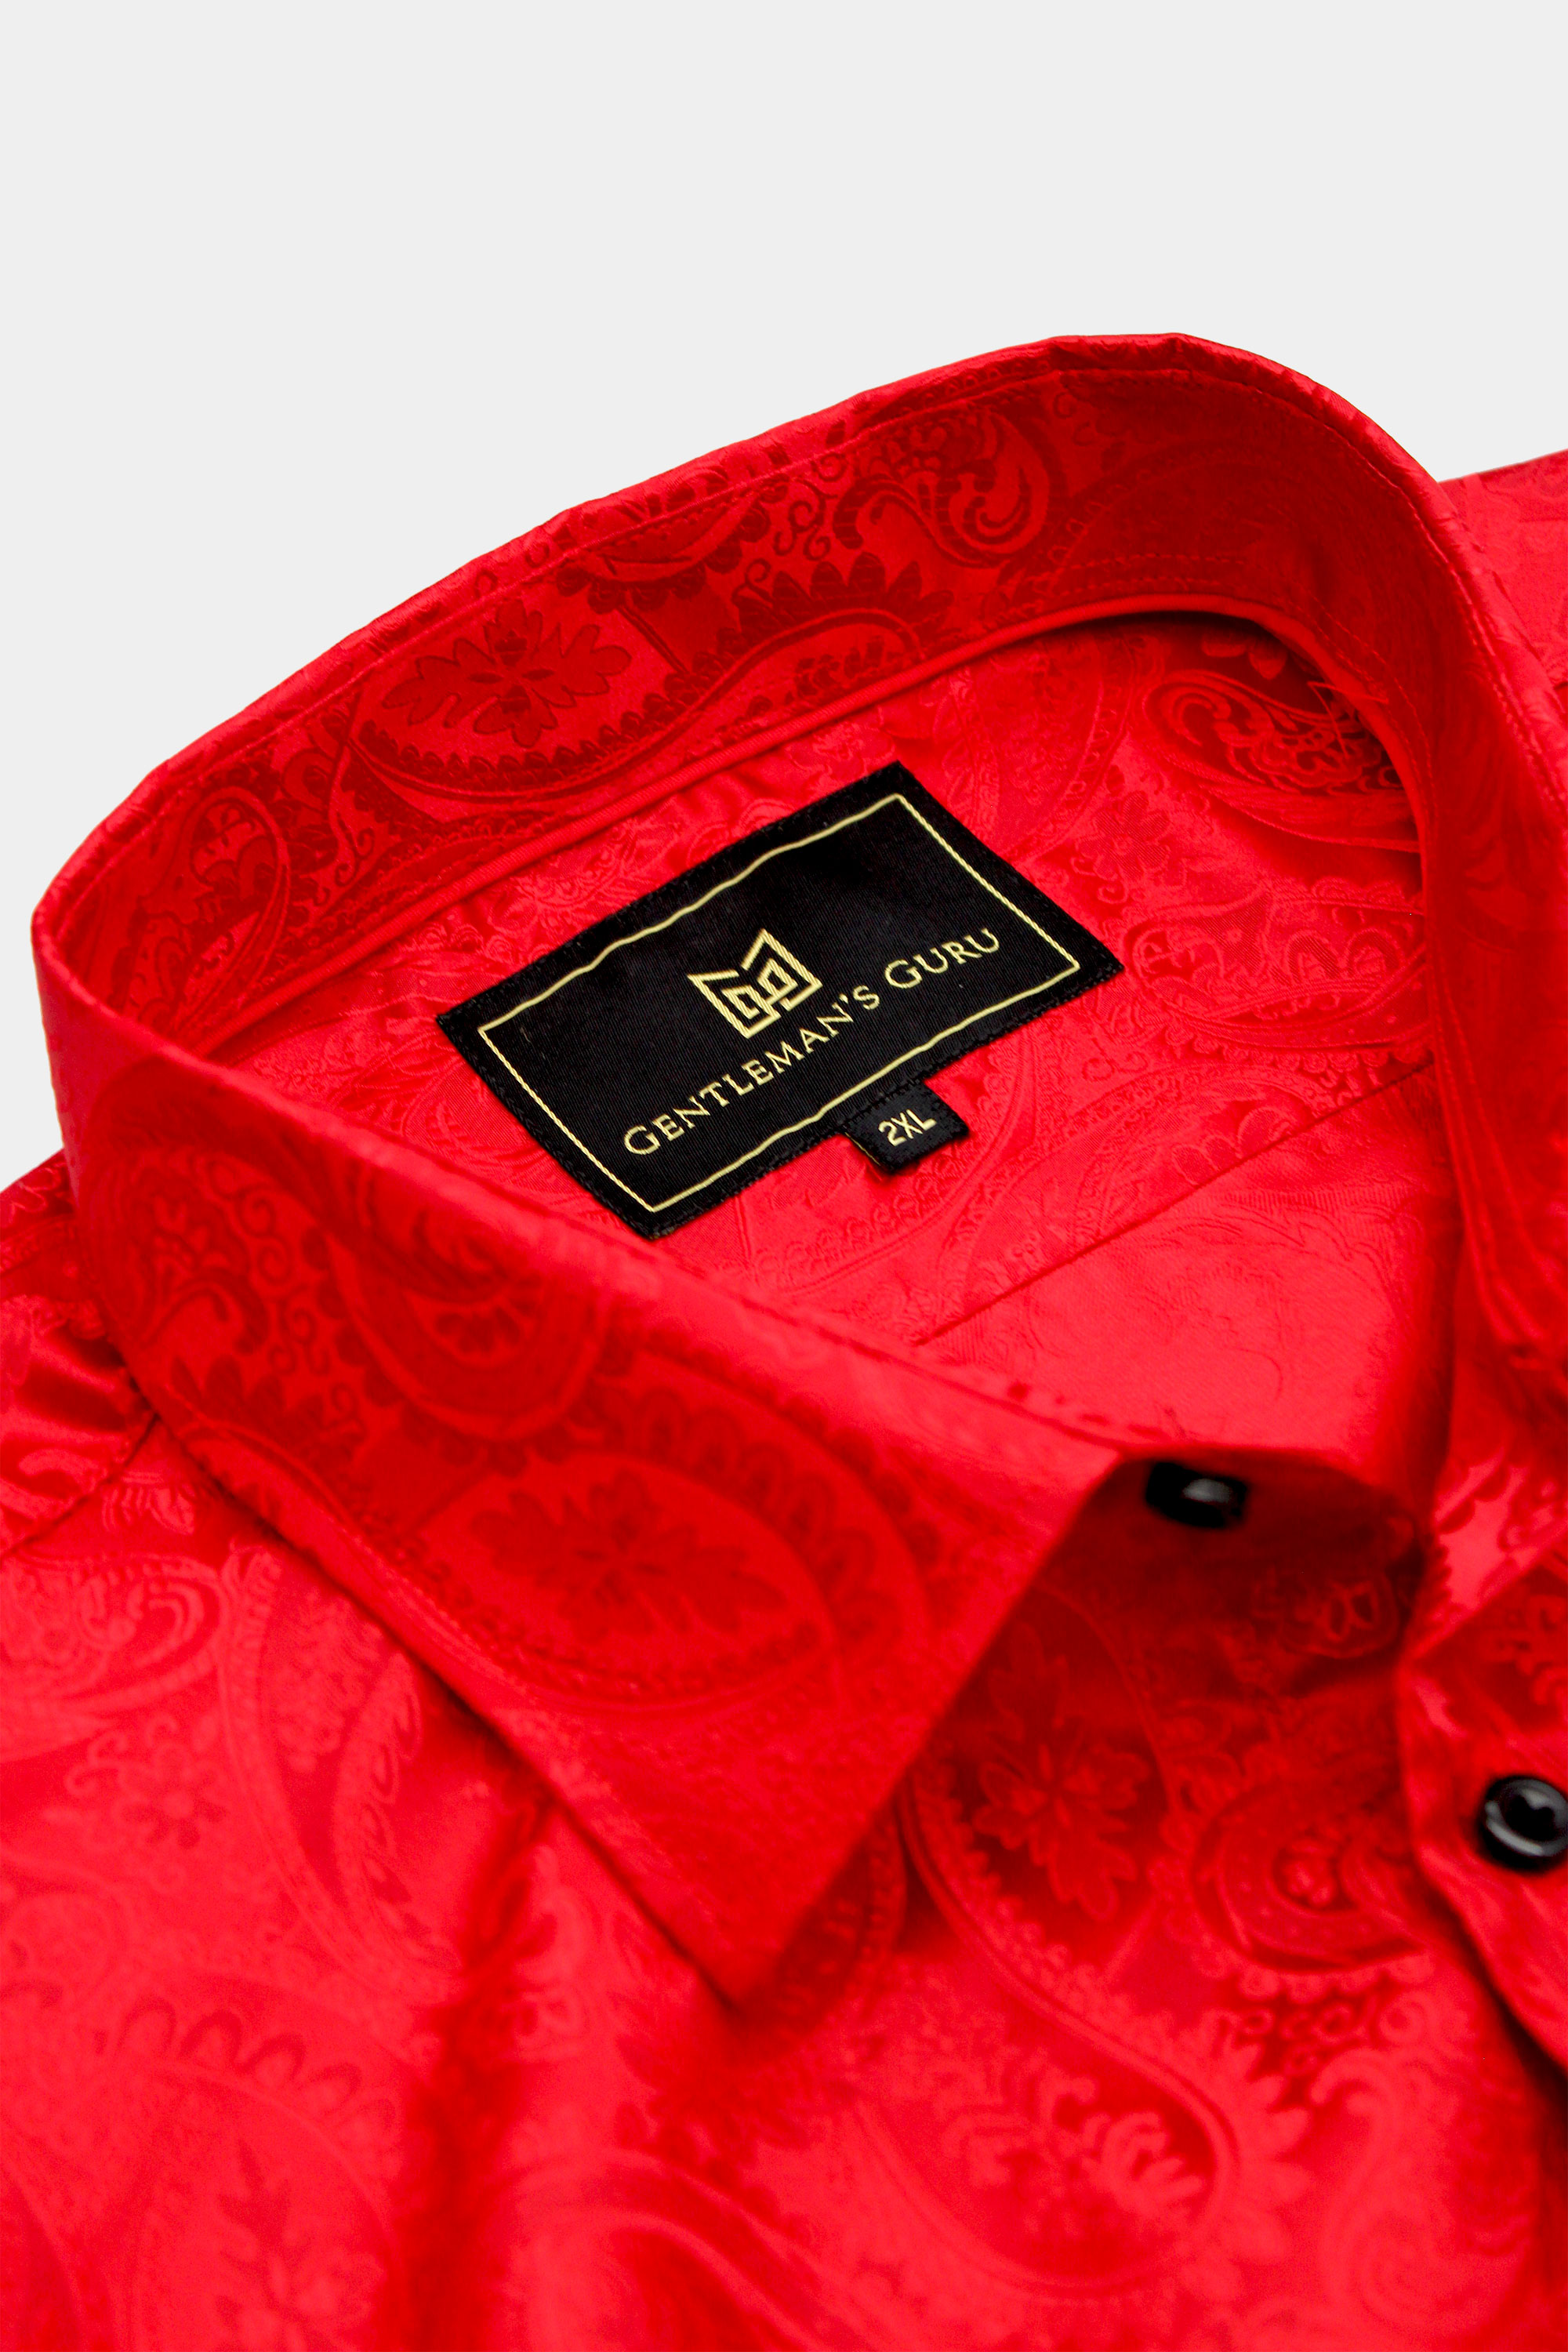 Men's Red Paisley Shirt | Gentleman's Guru